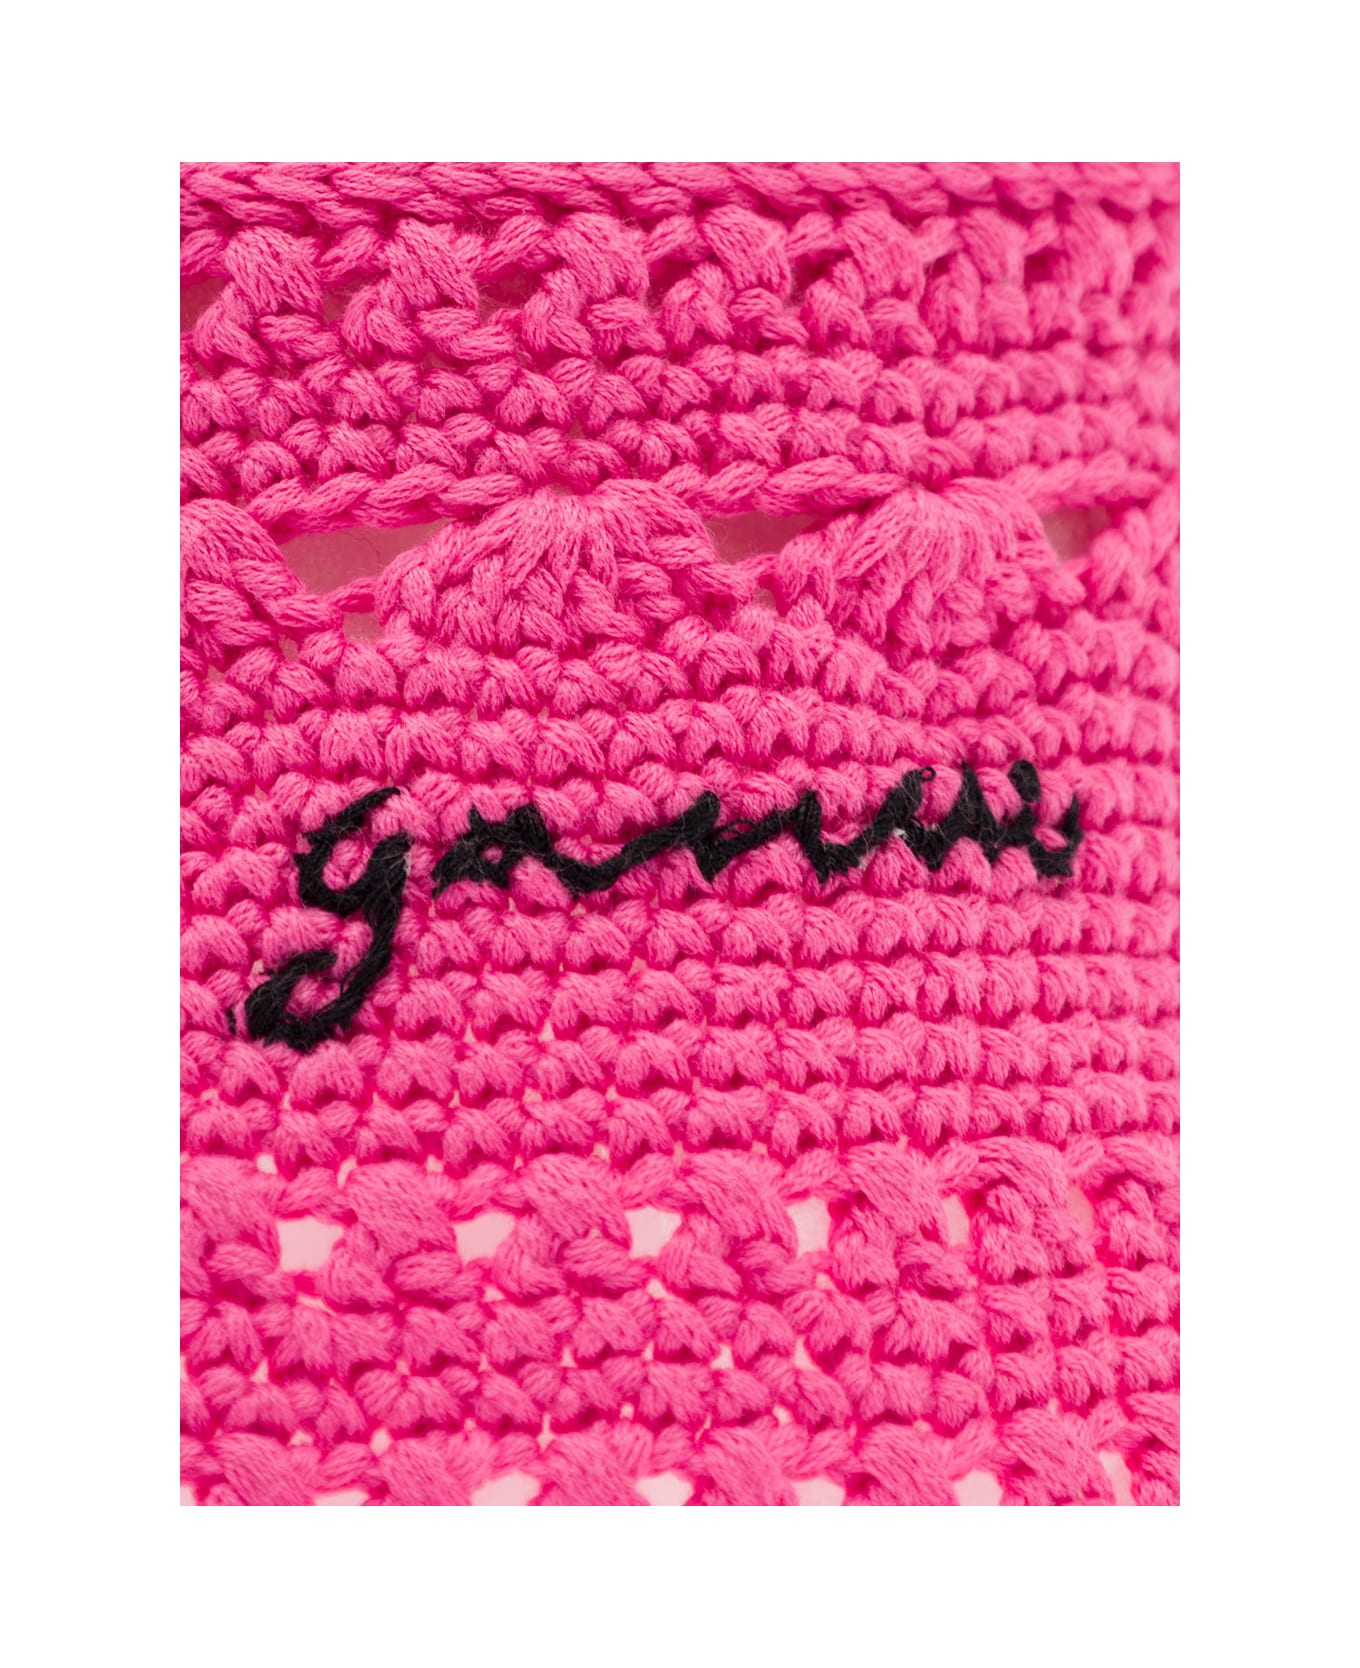 Ganni Cotton Crochet Bucket Hat Solid - Pink